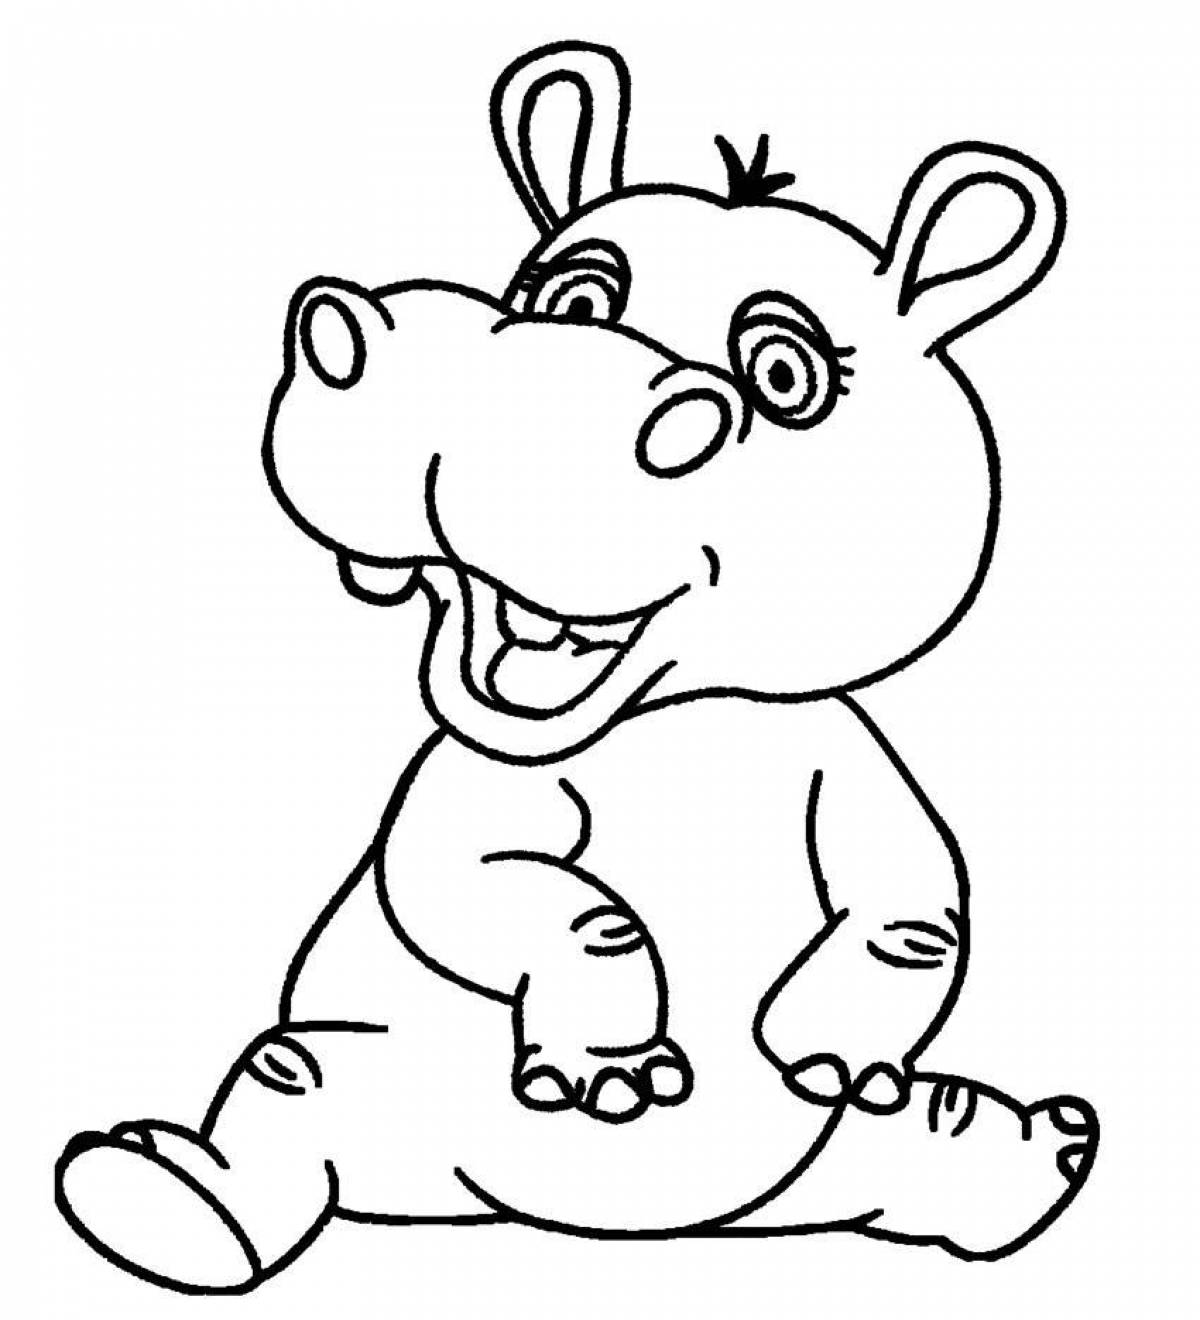 Coloring hippopotamus for kids